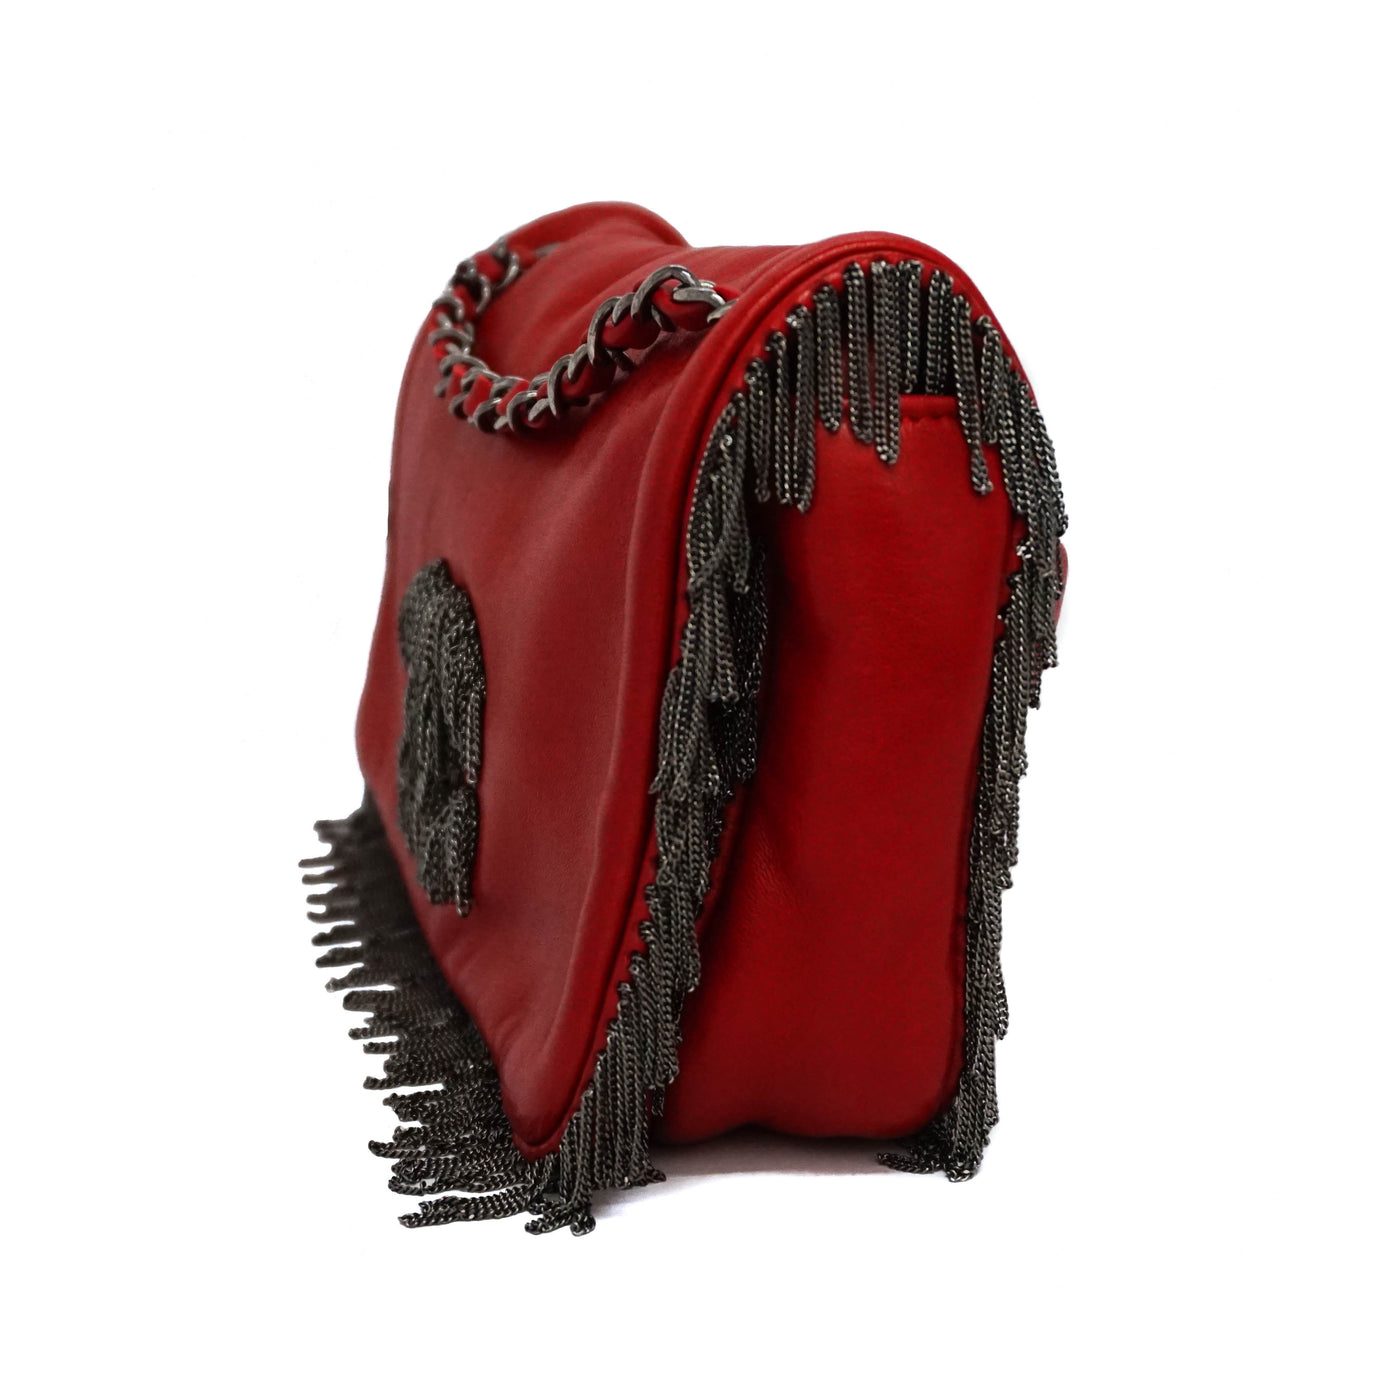 Chanel Red Calfskin Rare Fringe Flap Bag